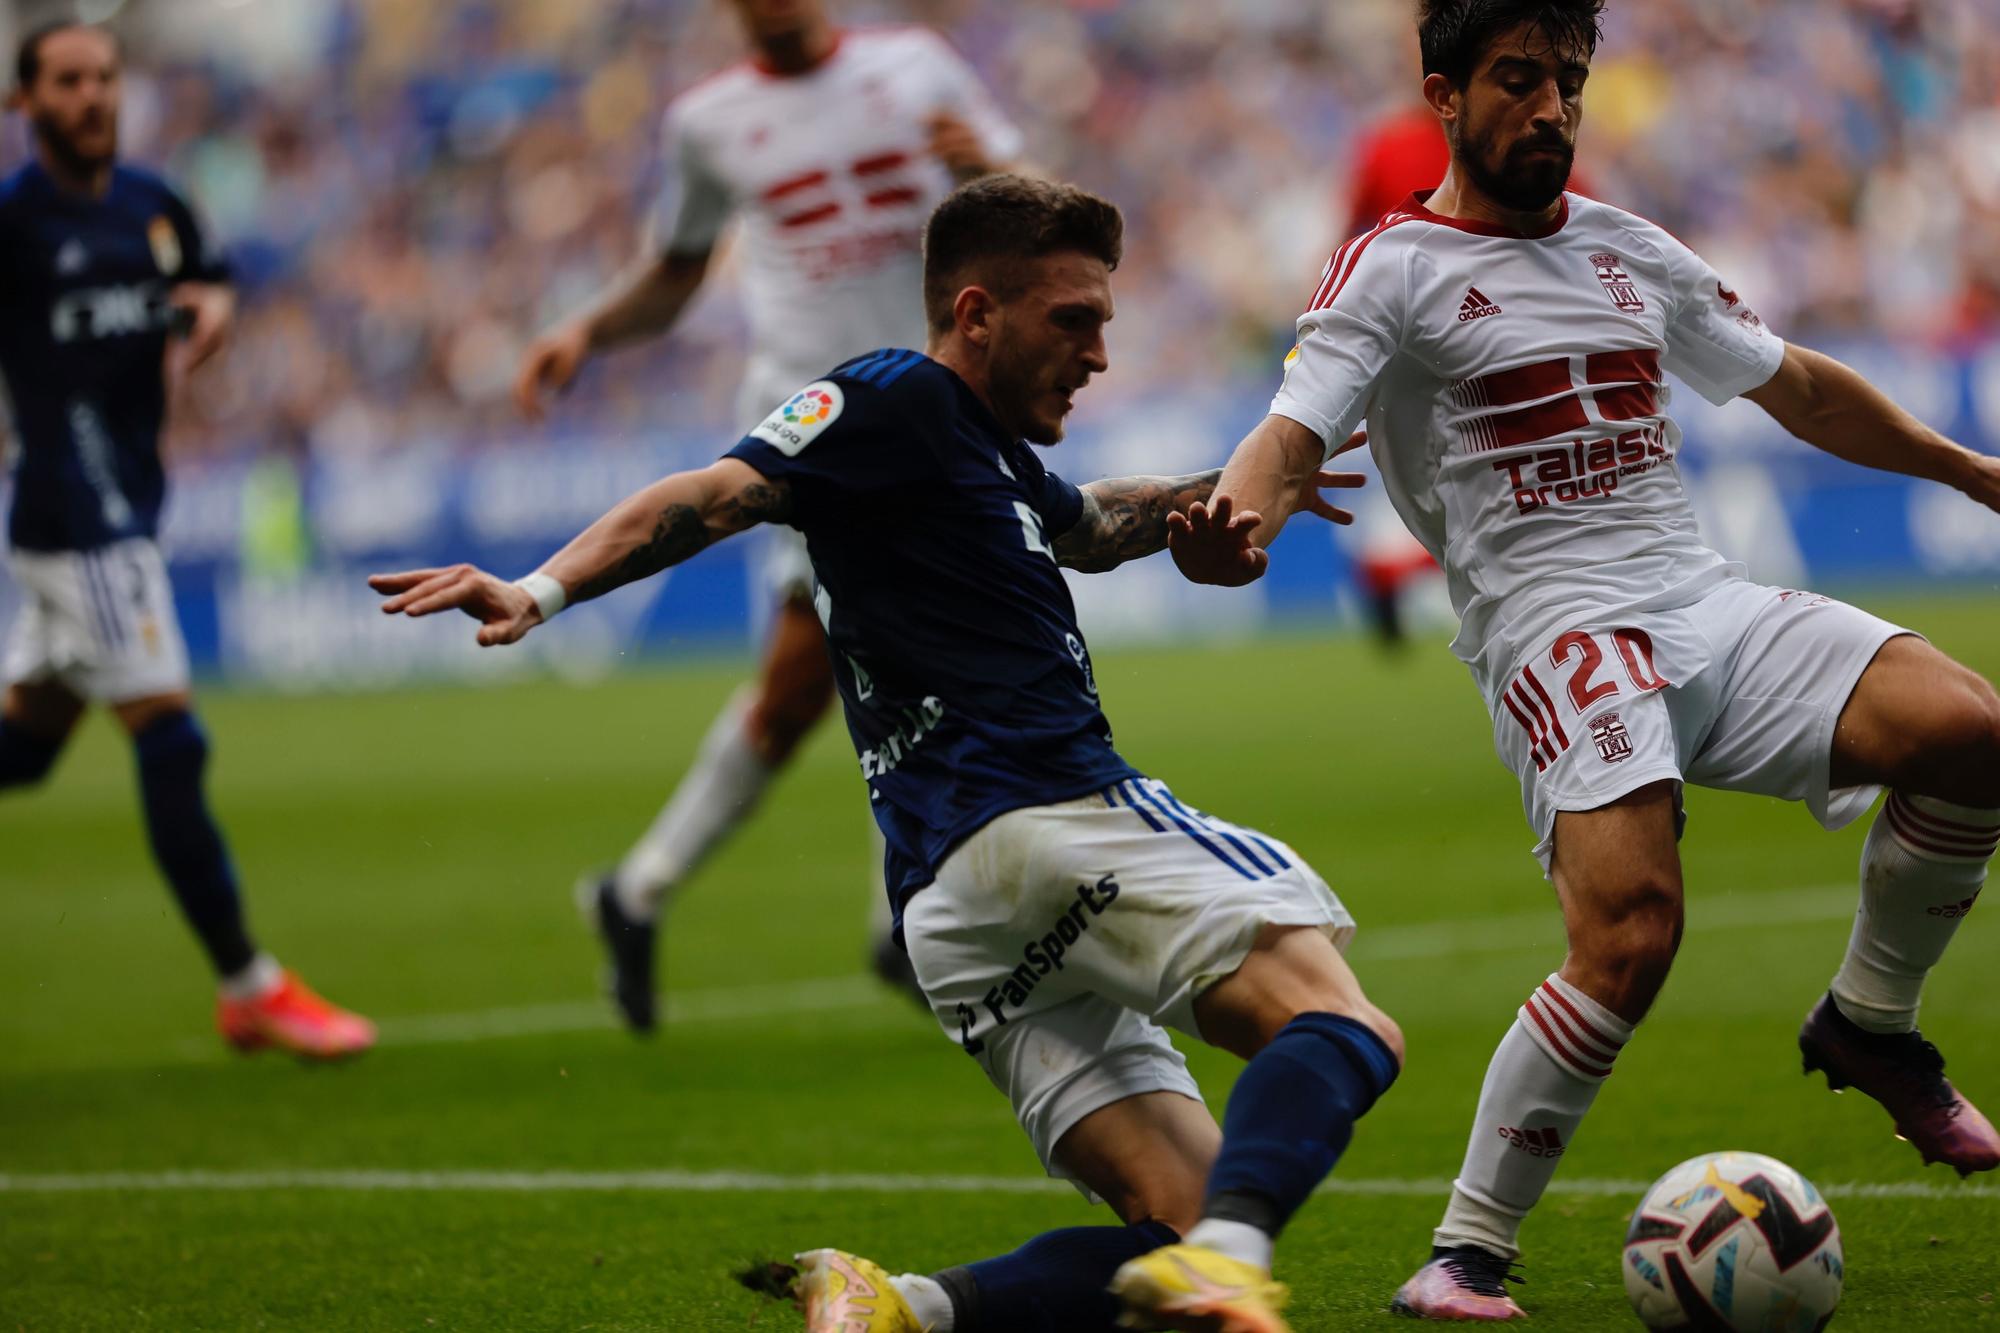 EN IMÁGENES: Así fue la derrota del Oviedo en casa ante el Cartagena (3-0)